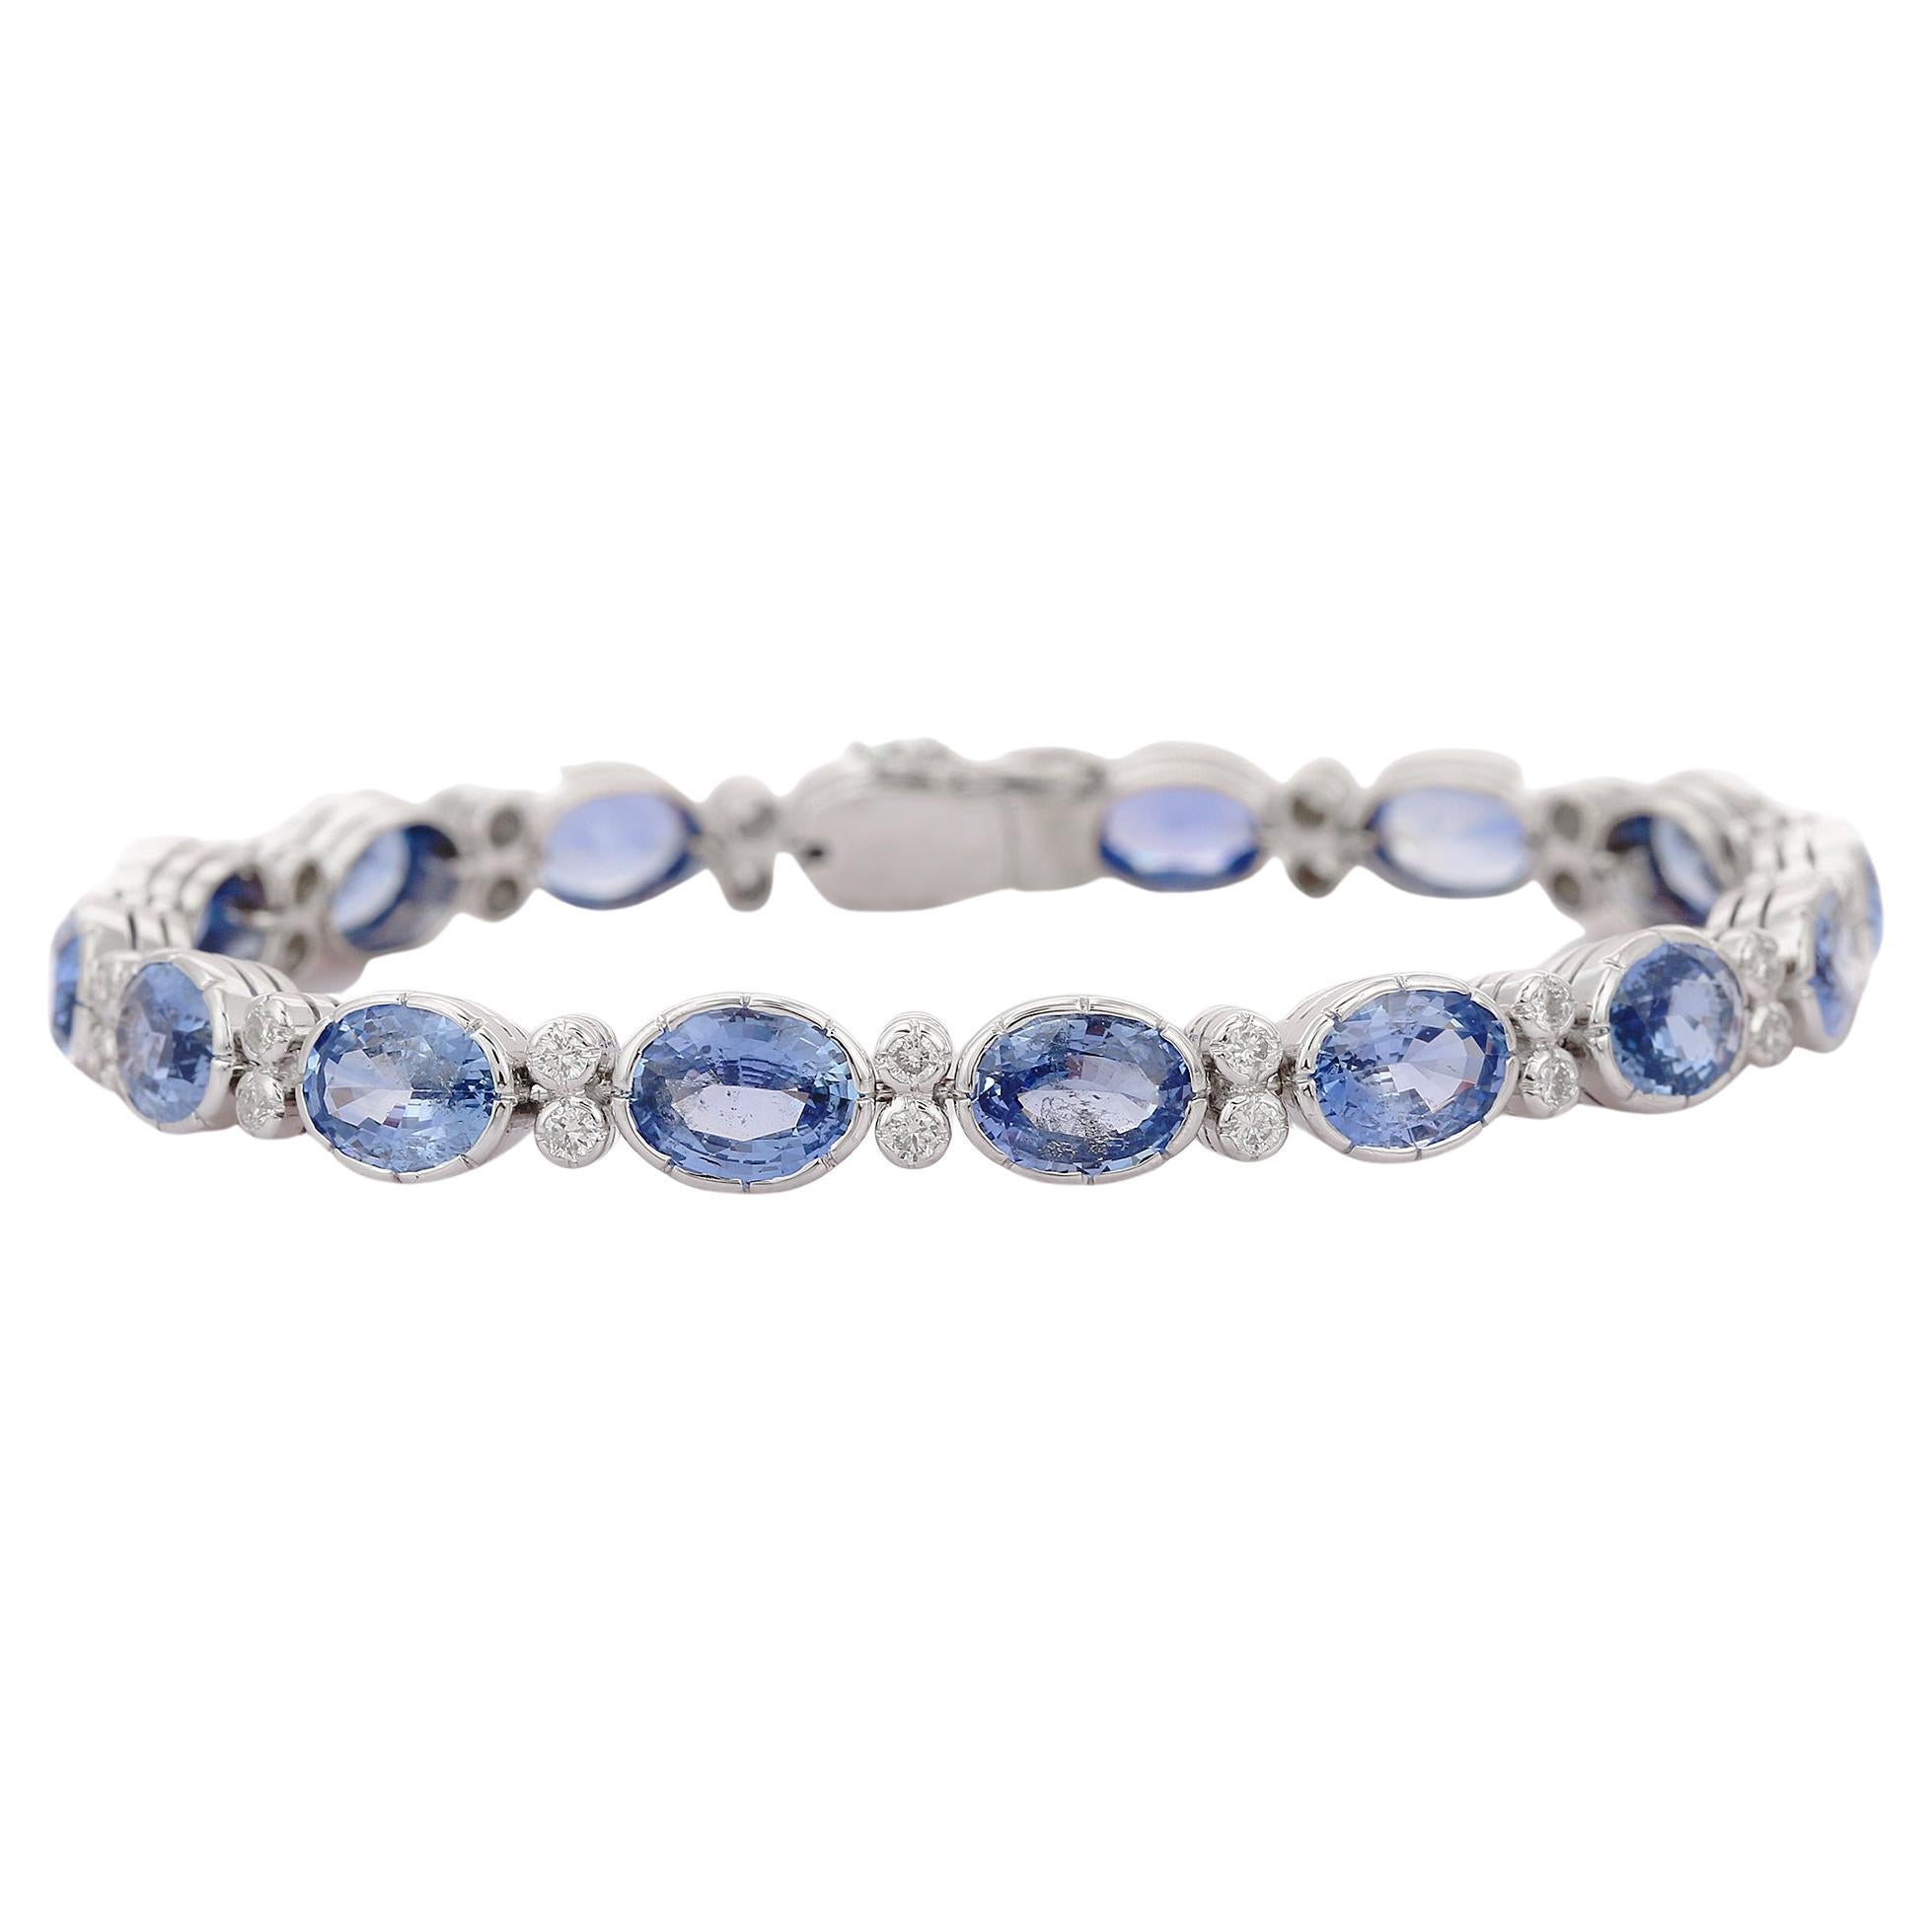 Bracelet tennis de style Art déco en or blanc 18 carats avec diamants et saphirs bleus naturels